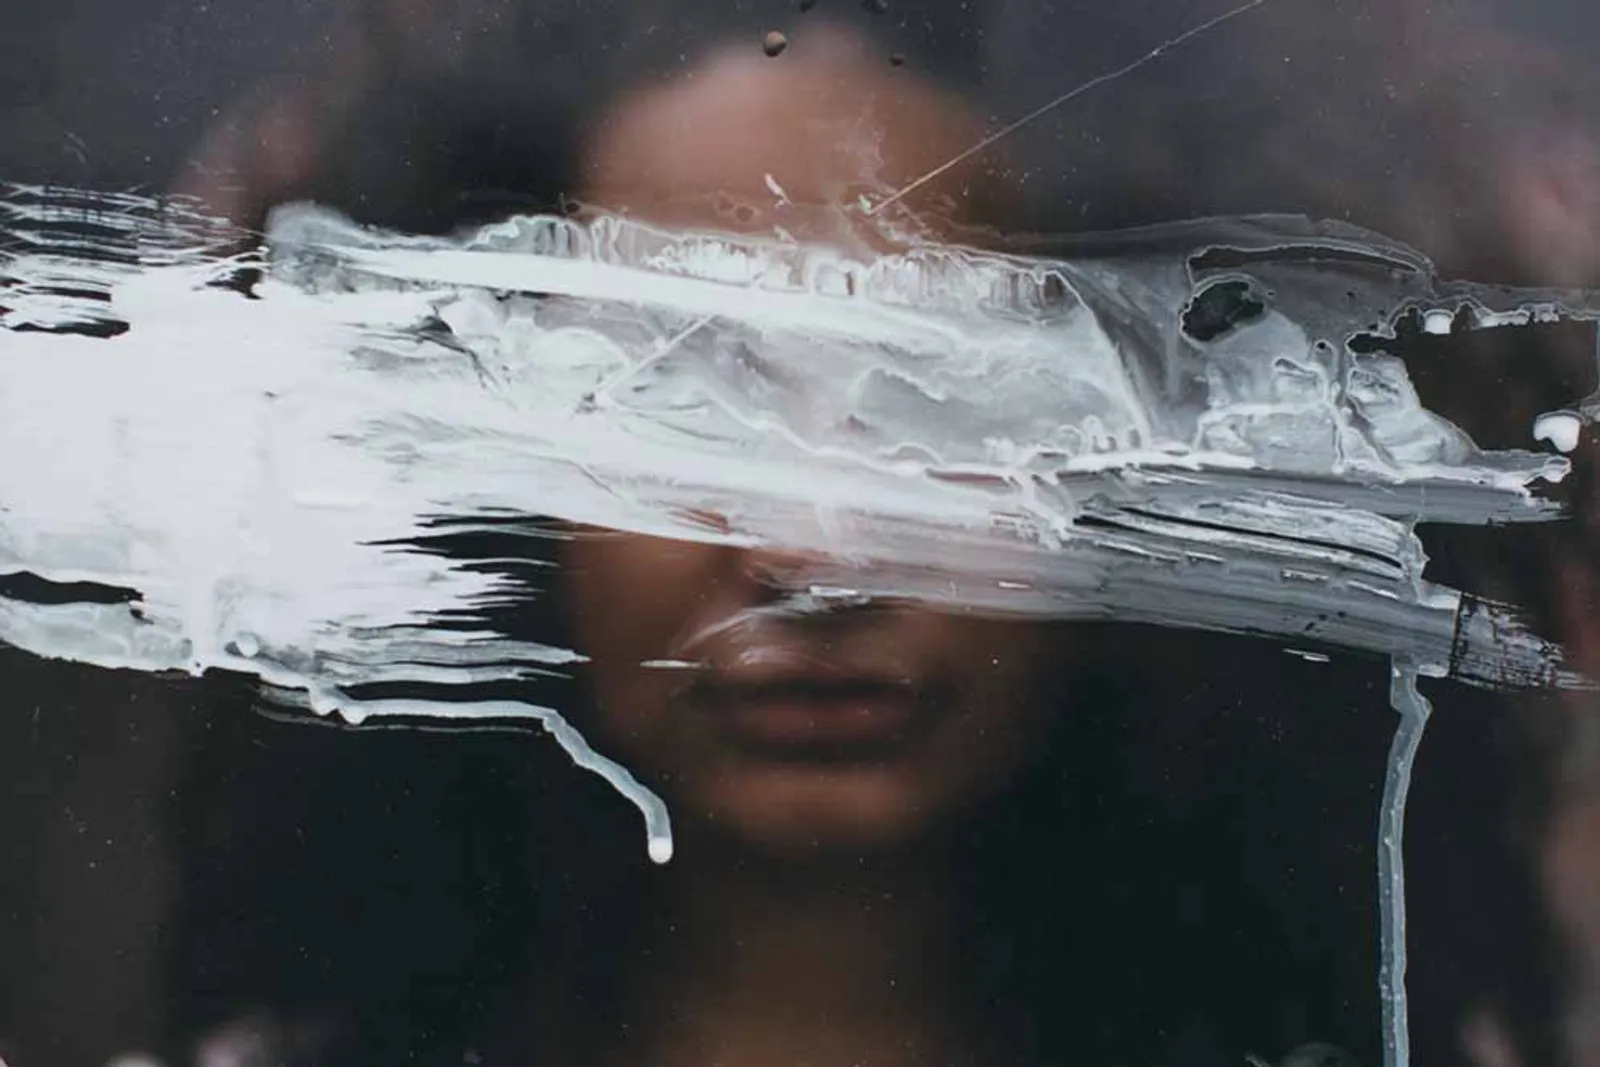 Unggahan Foto Seperti Ini Ungkap Gejala Depresi dalam Diri Seseorang